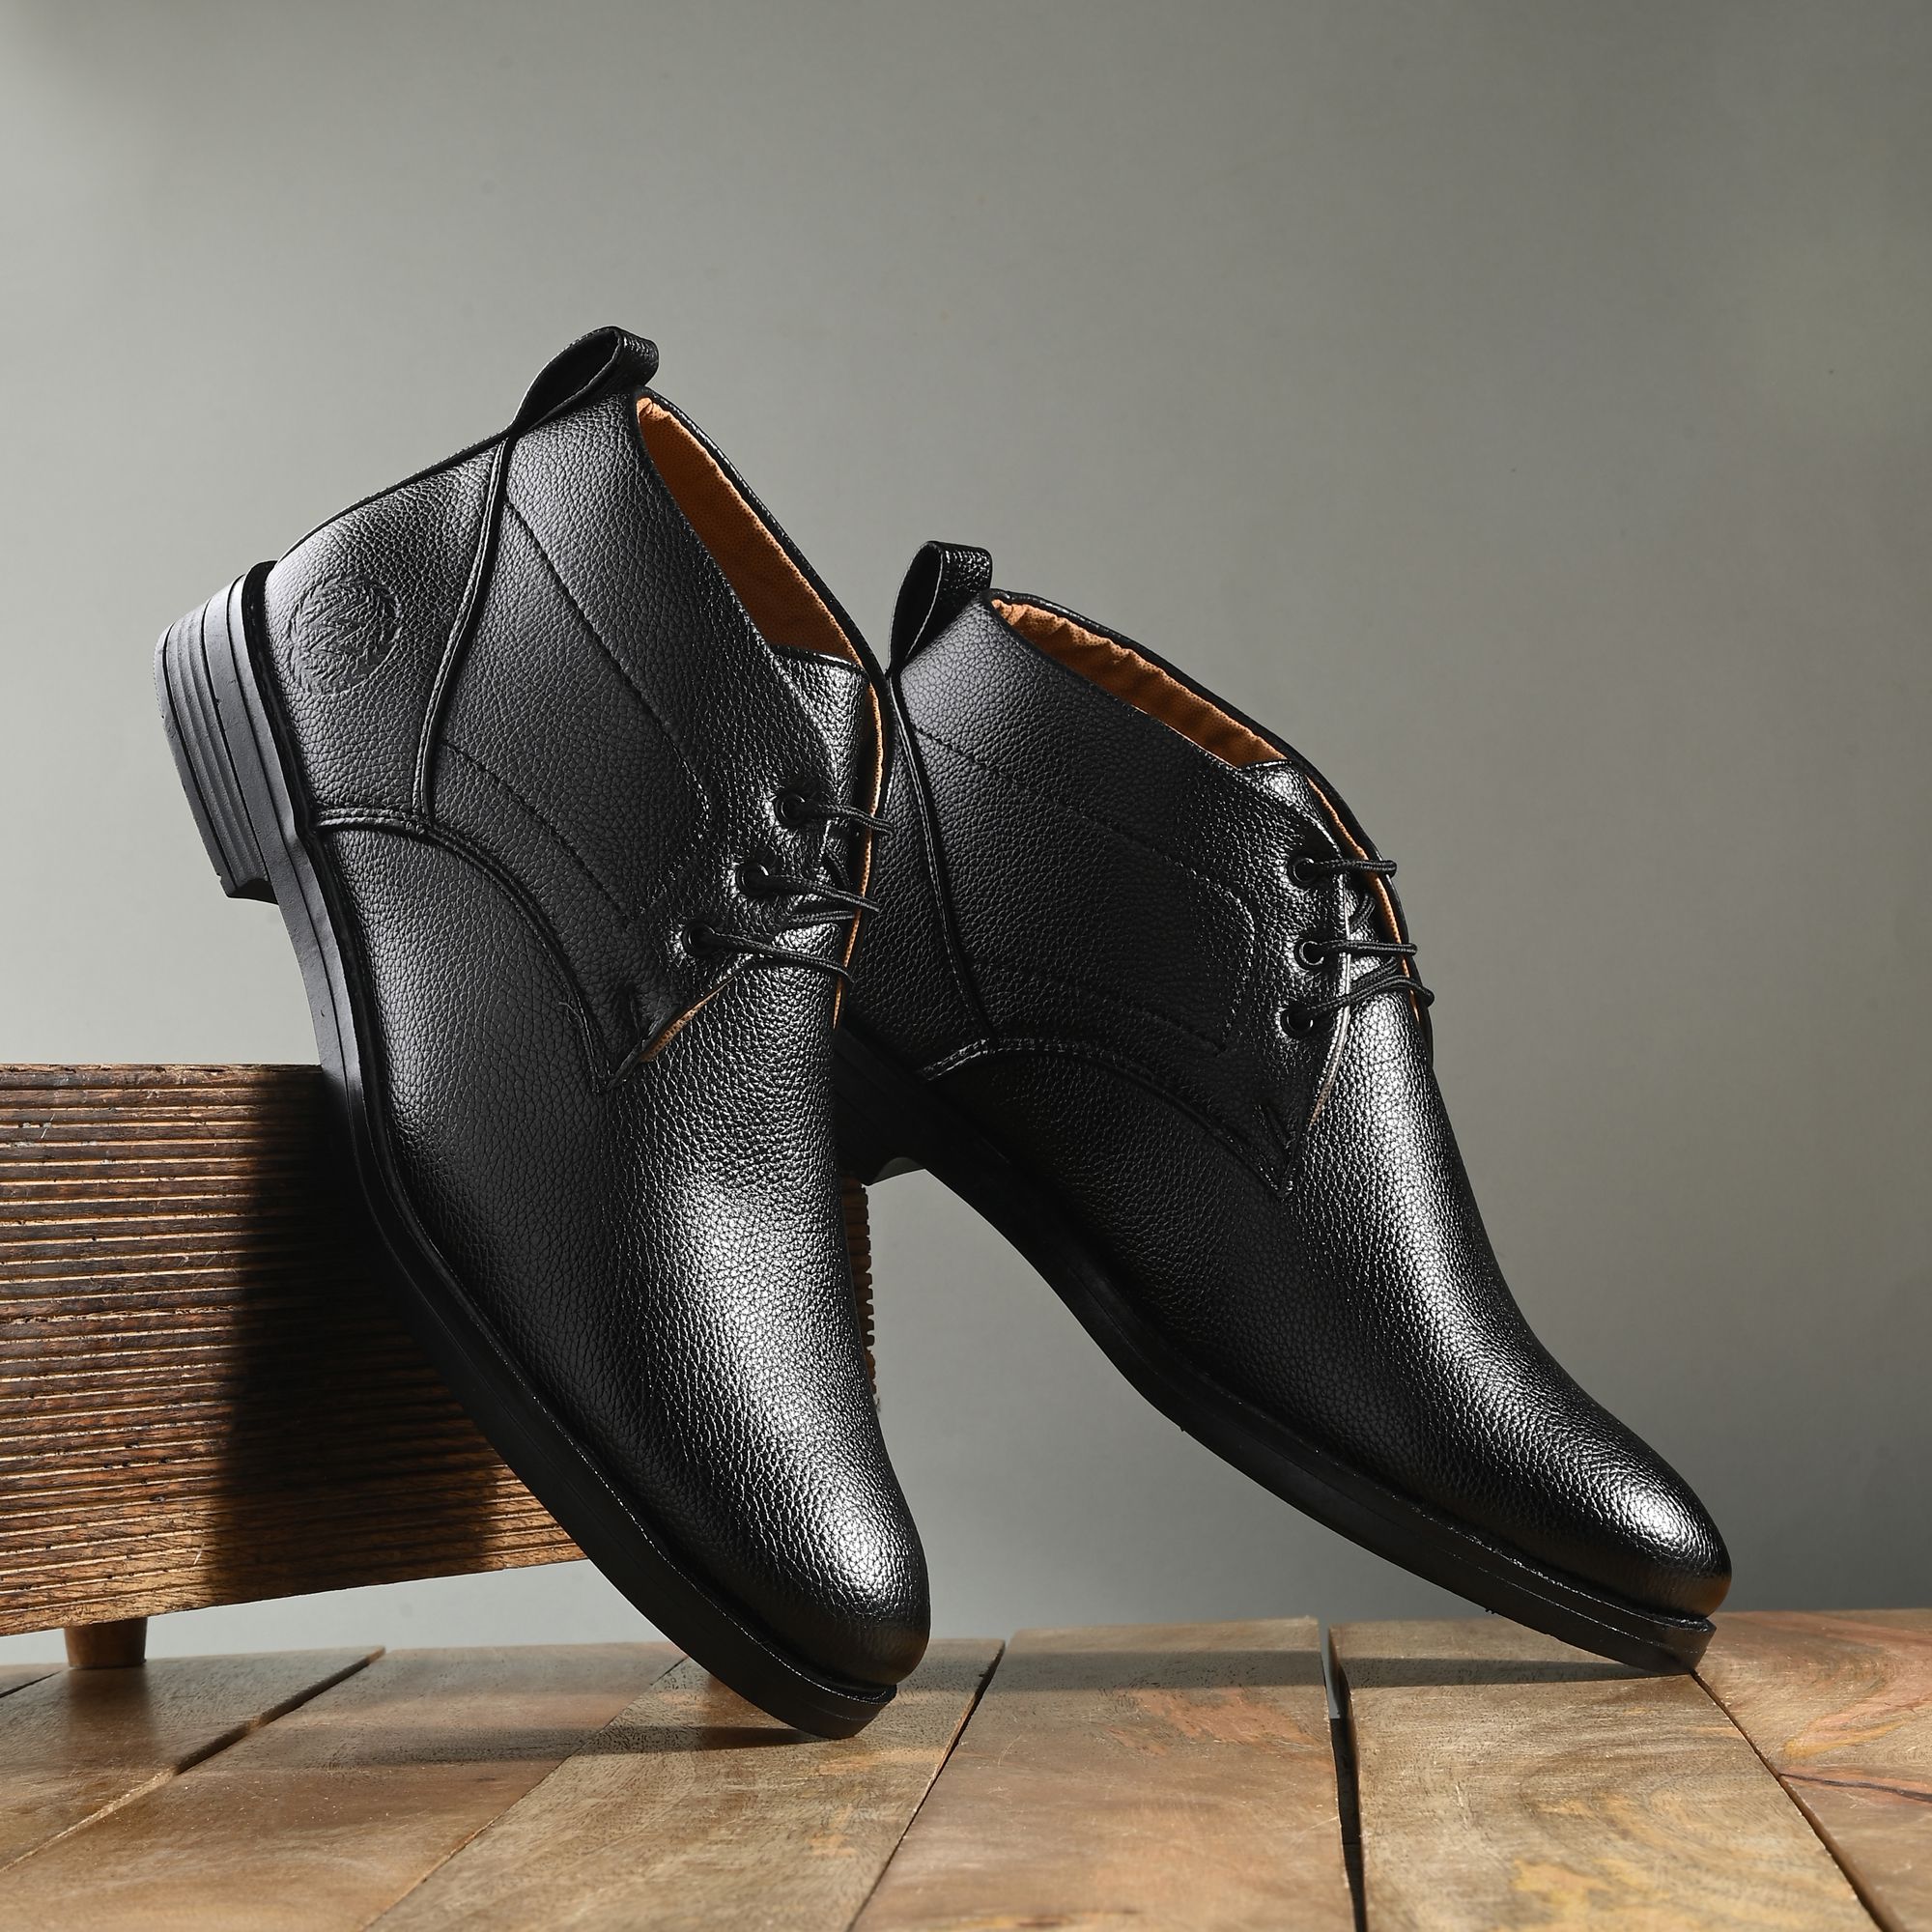     			Leeport - Black Men's Casual Boots